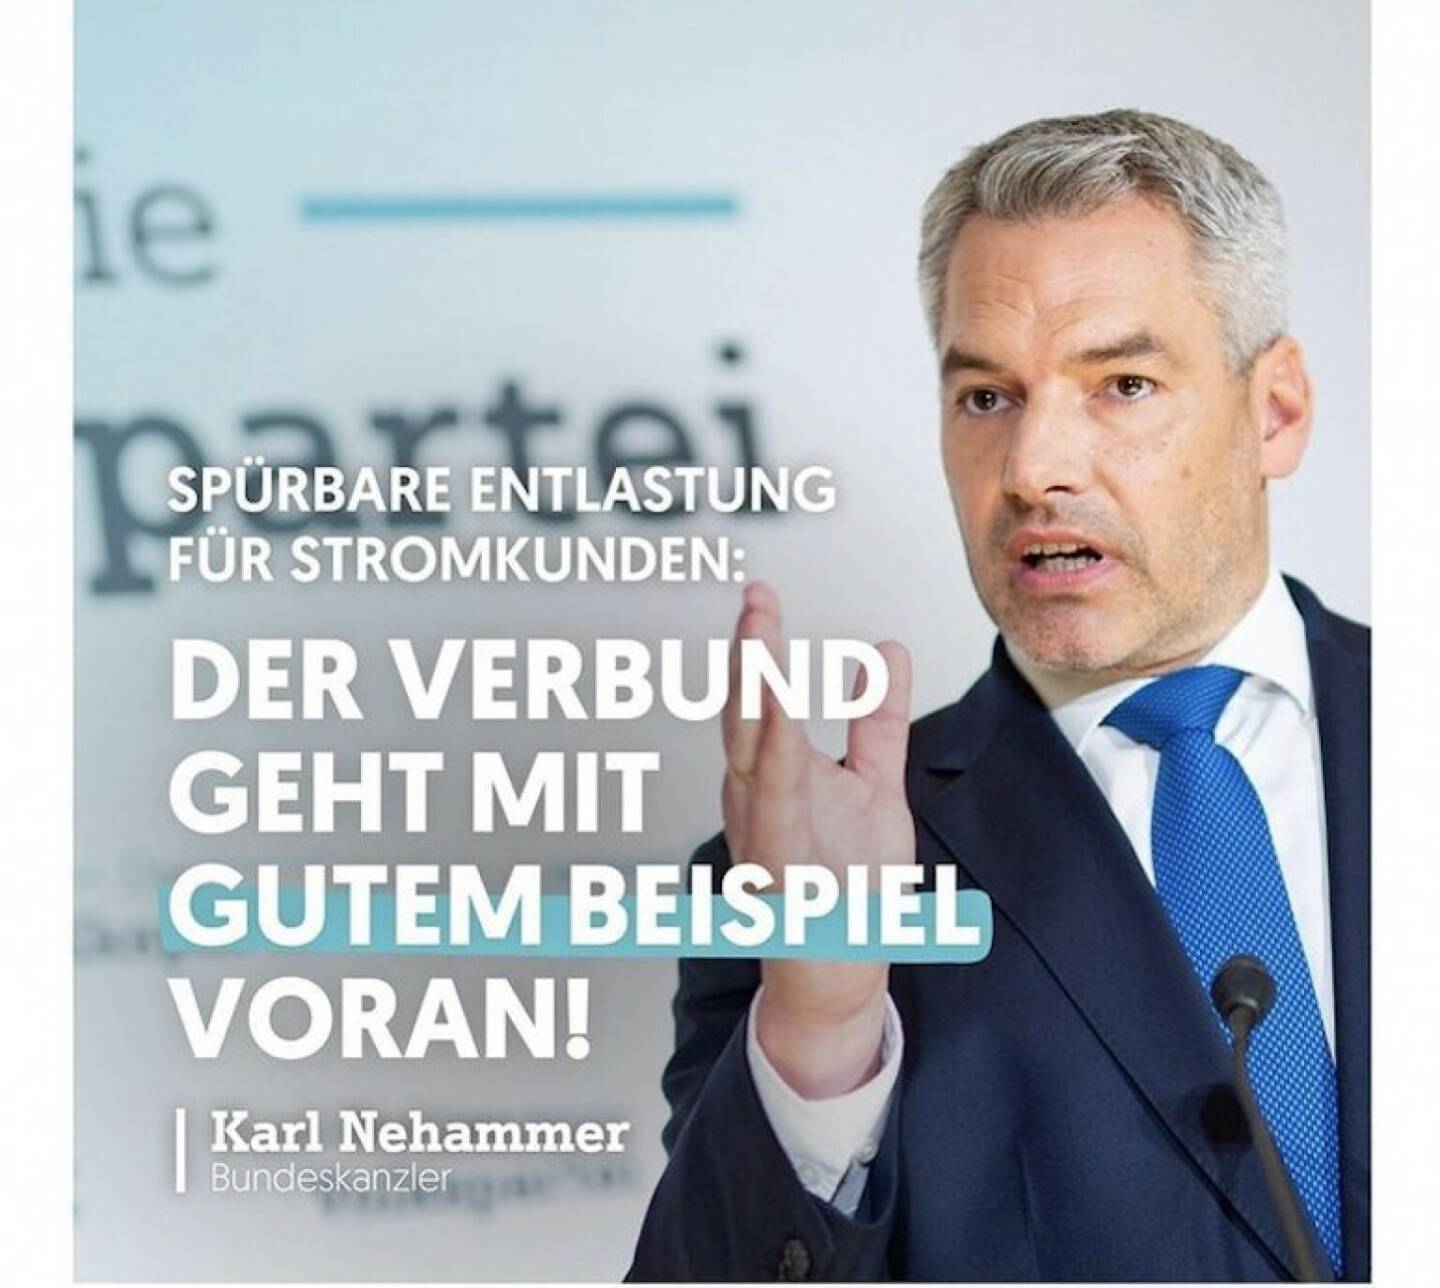 Karl Nehammer: Der Verbund geht mit gutem Beispiel voran